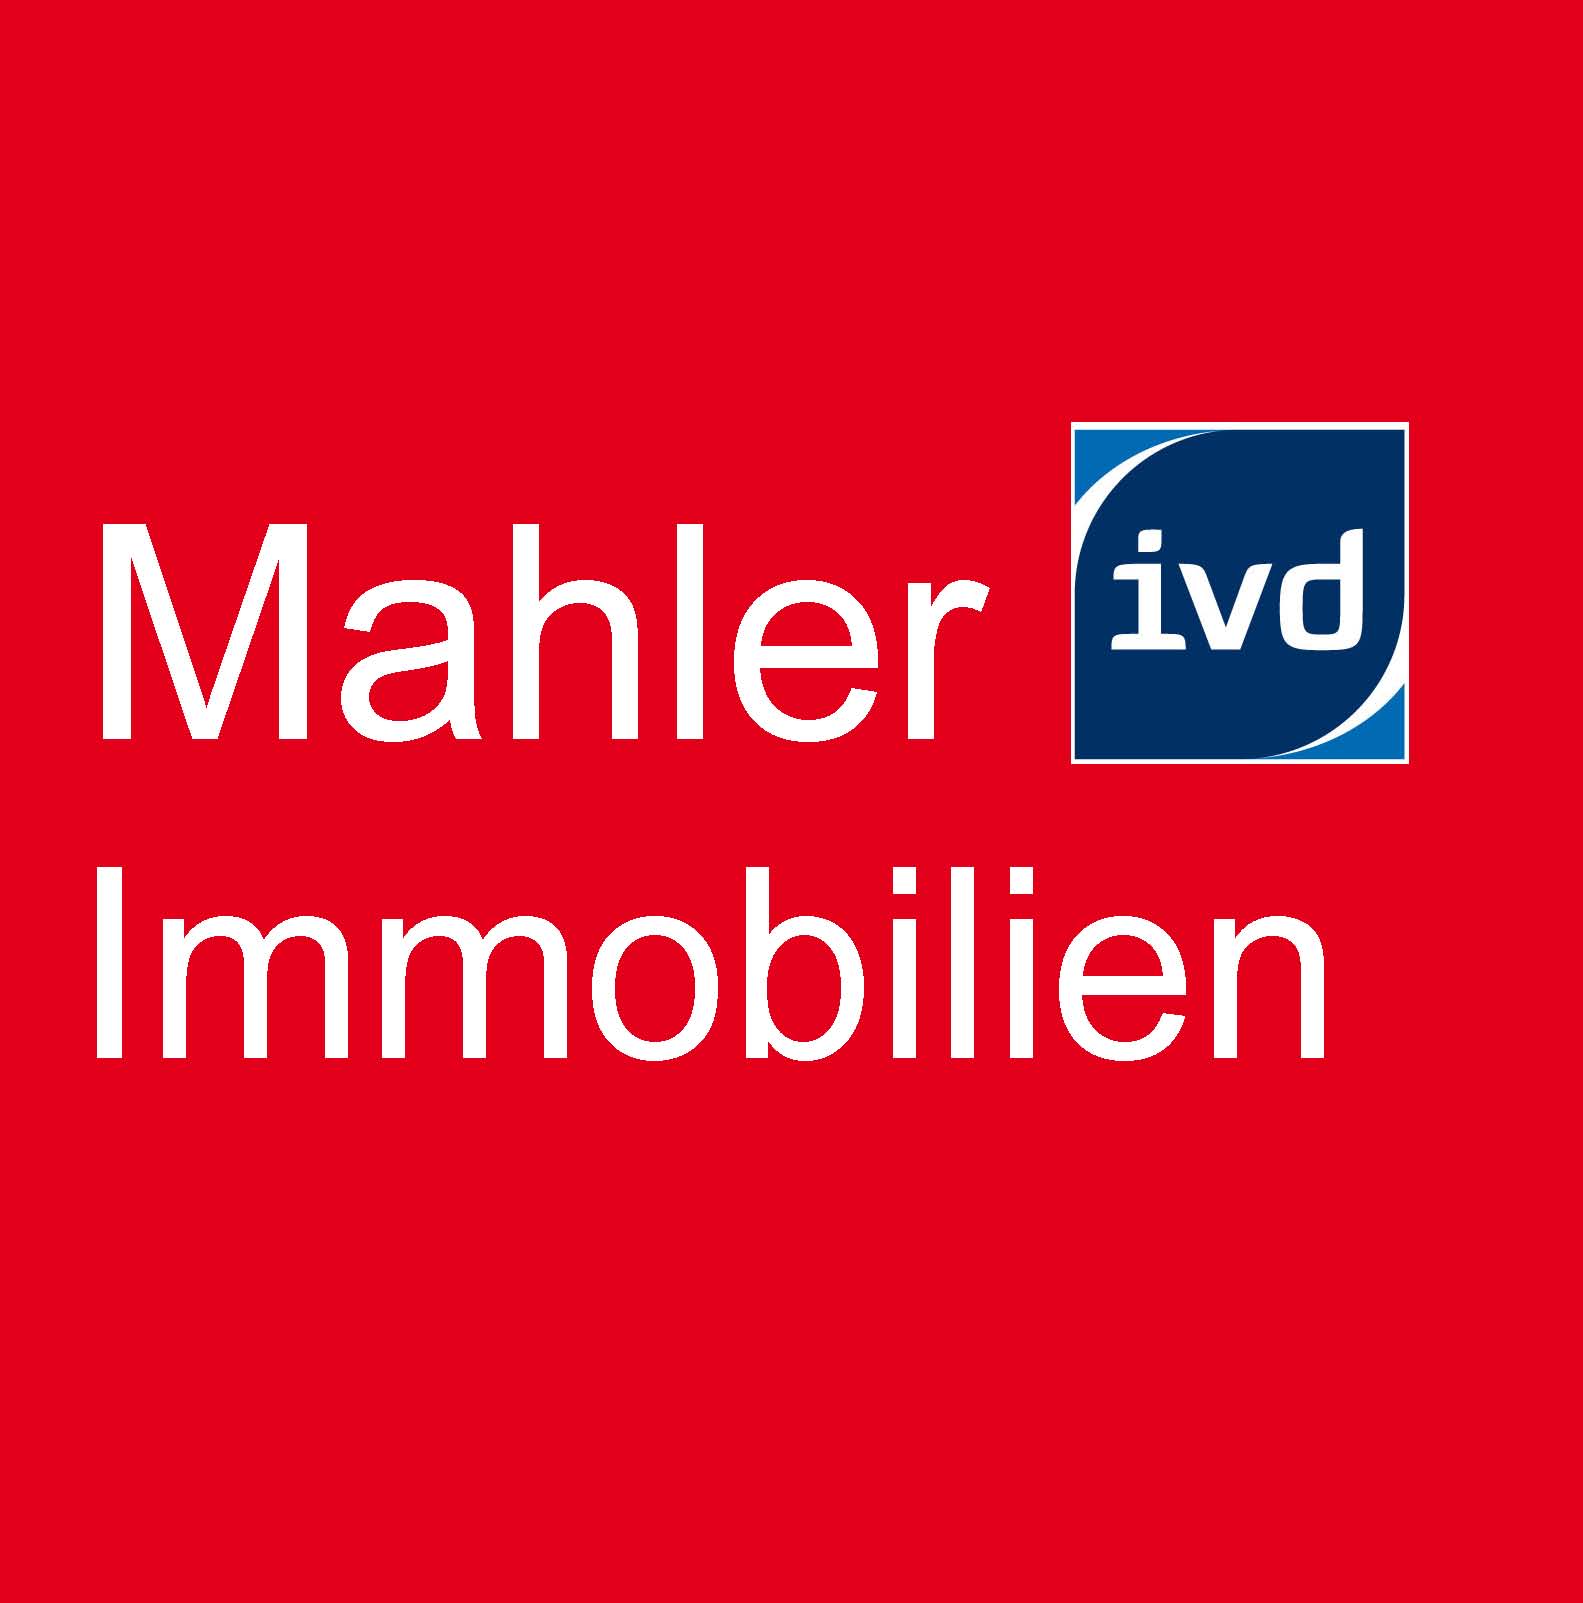 Mahler Immobilien IVD und Gebäudemanagement in Bensheim